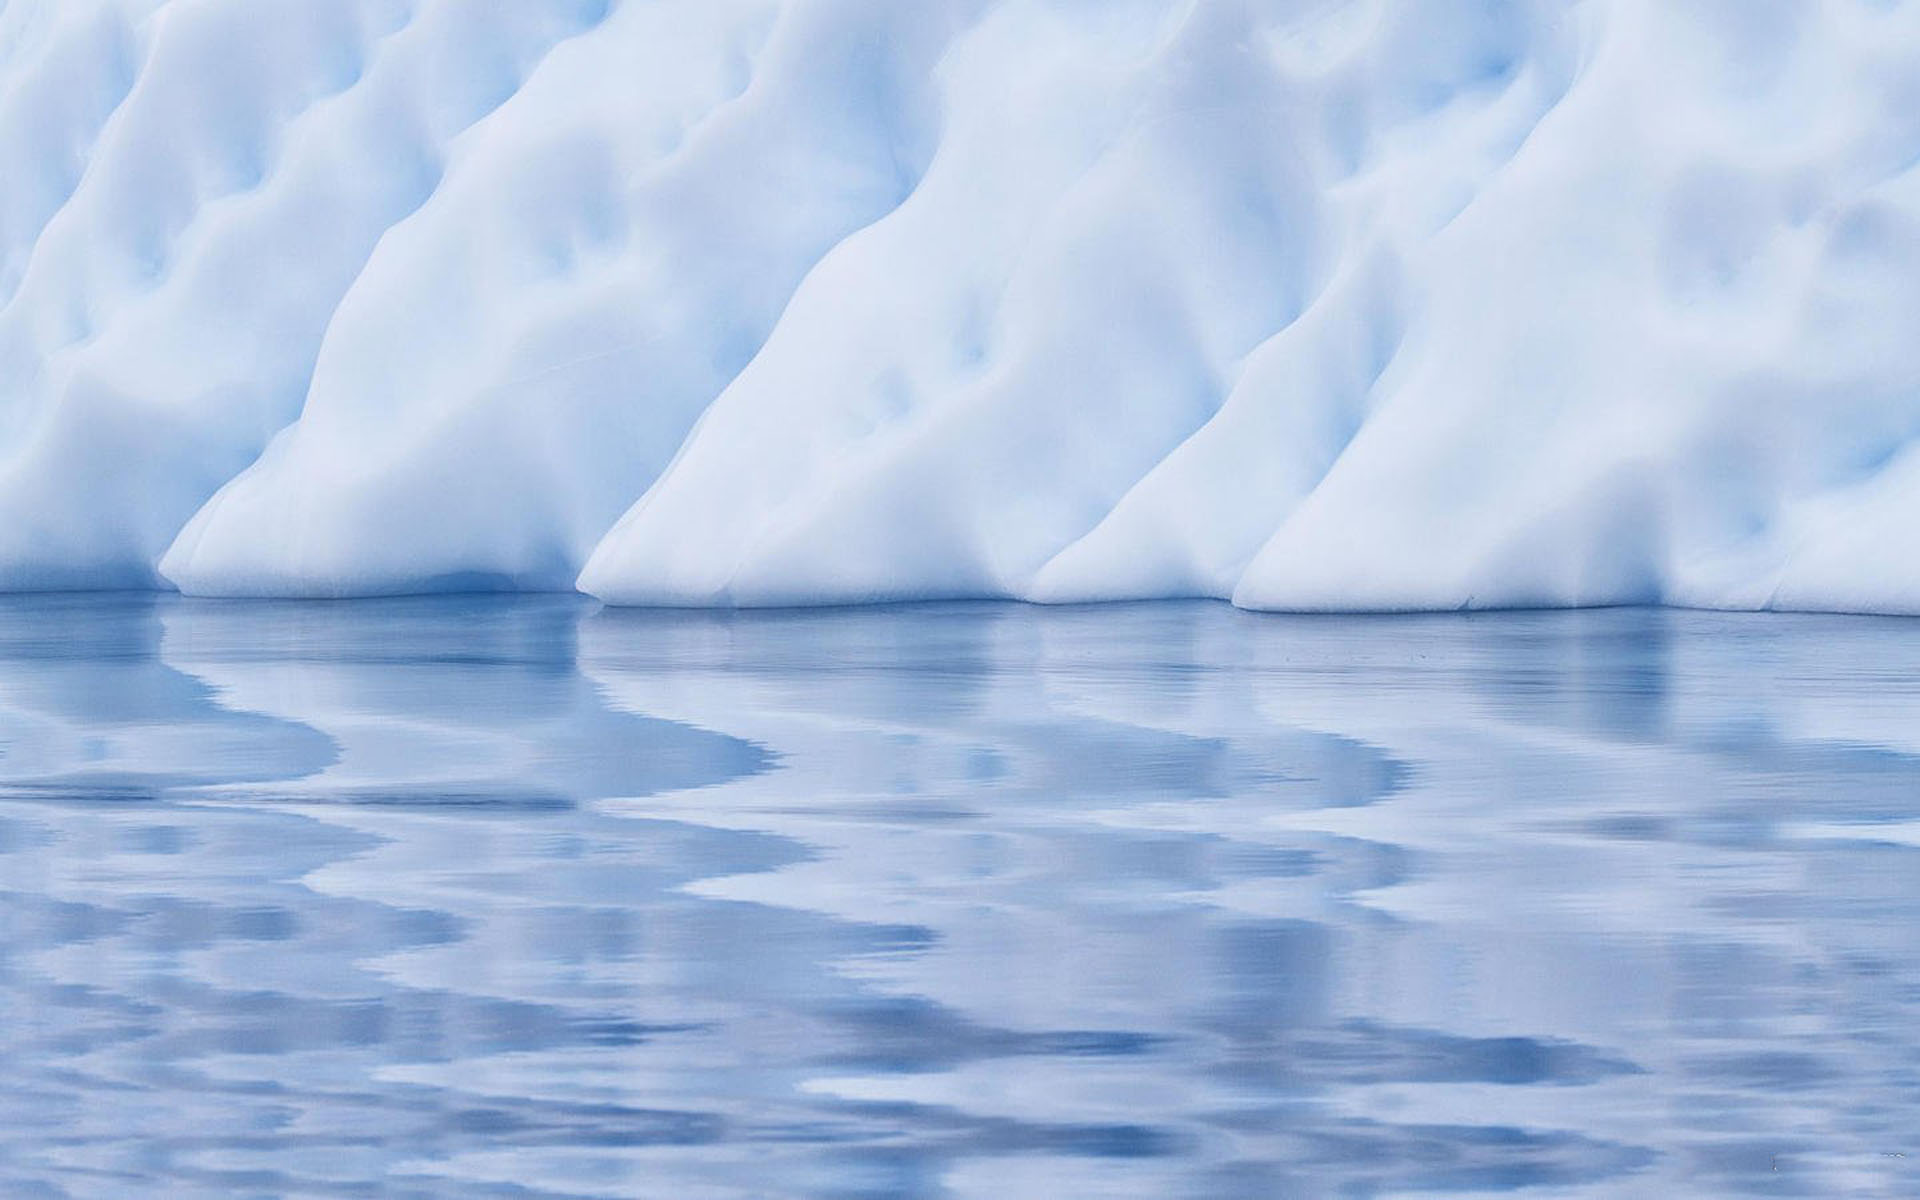 自然风景摄影作品 唯美白色冰山壮观风景图片(9)